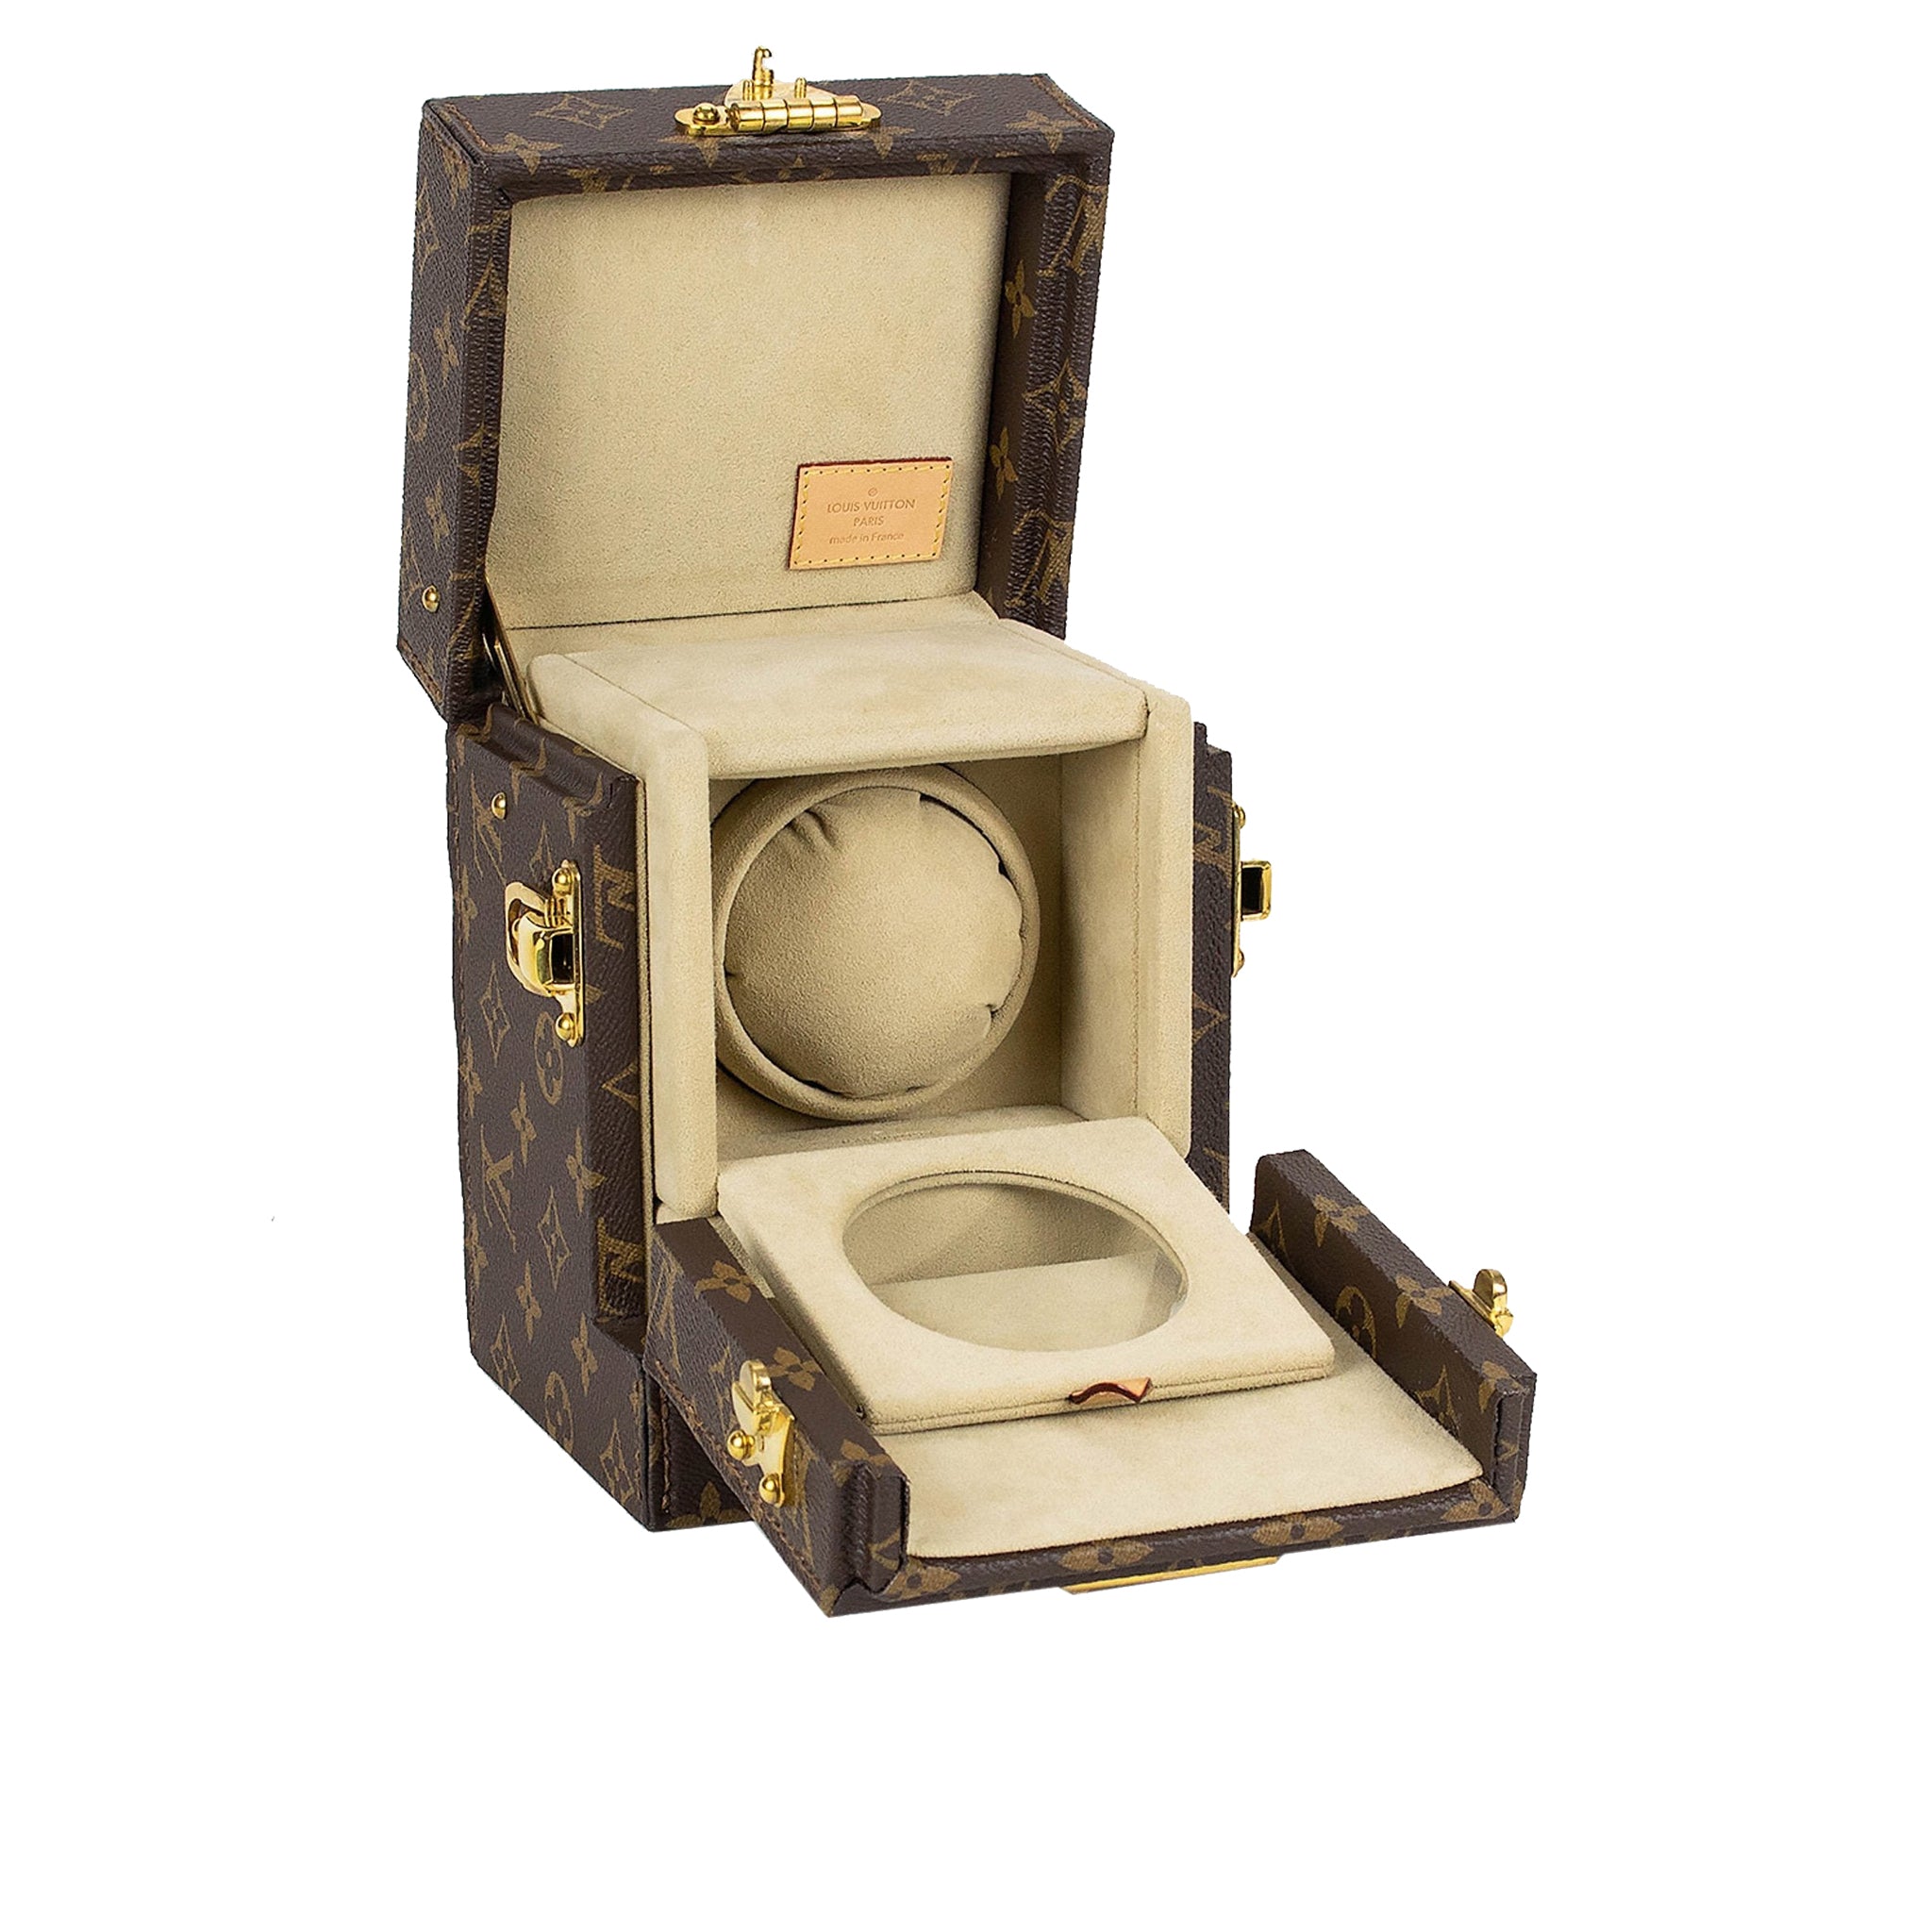 image of Louis Vuitton Monogram Brown Watch Box